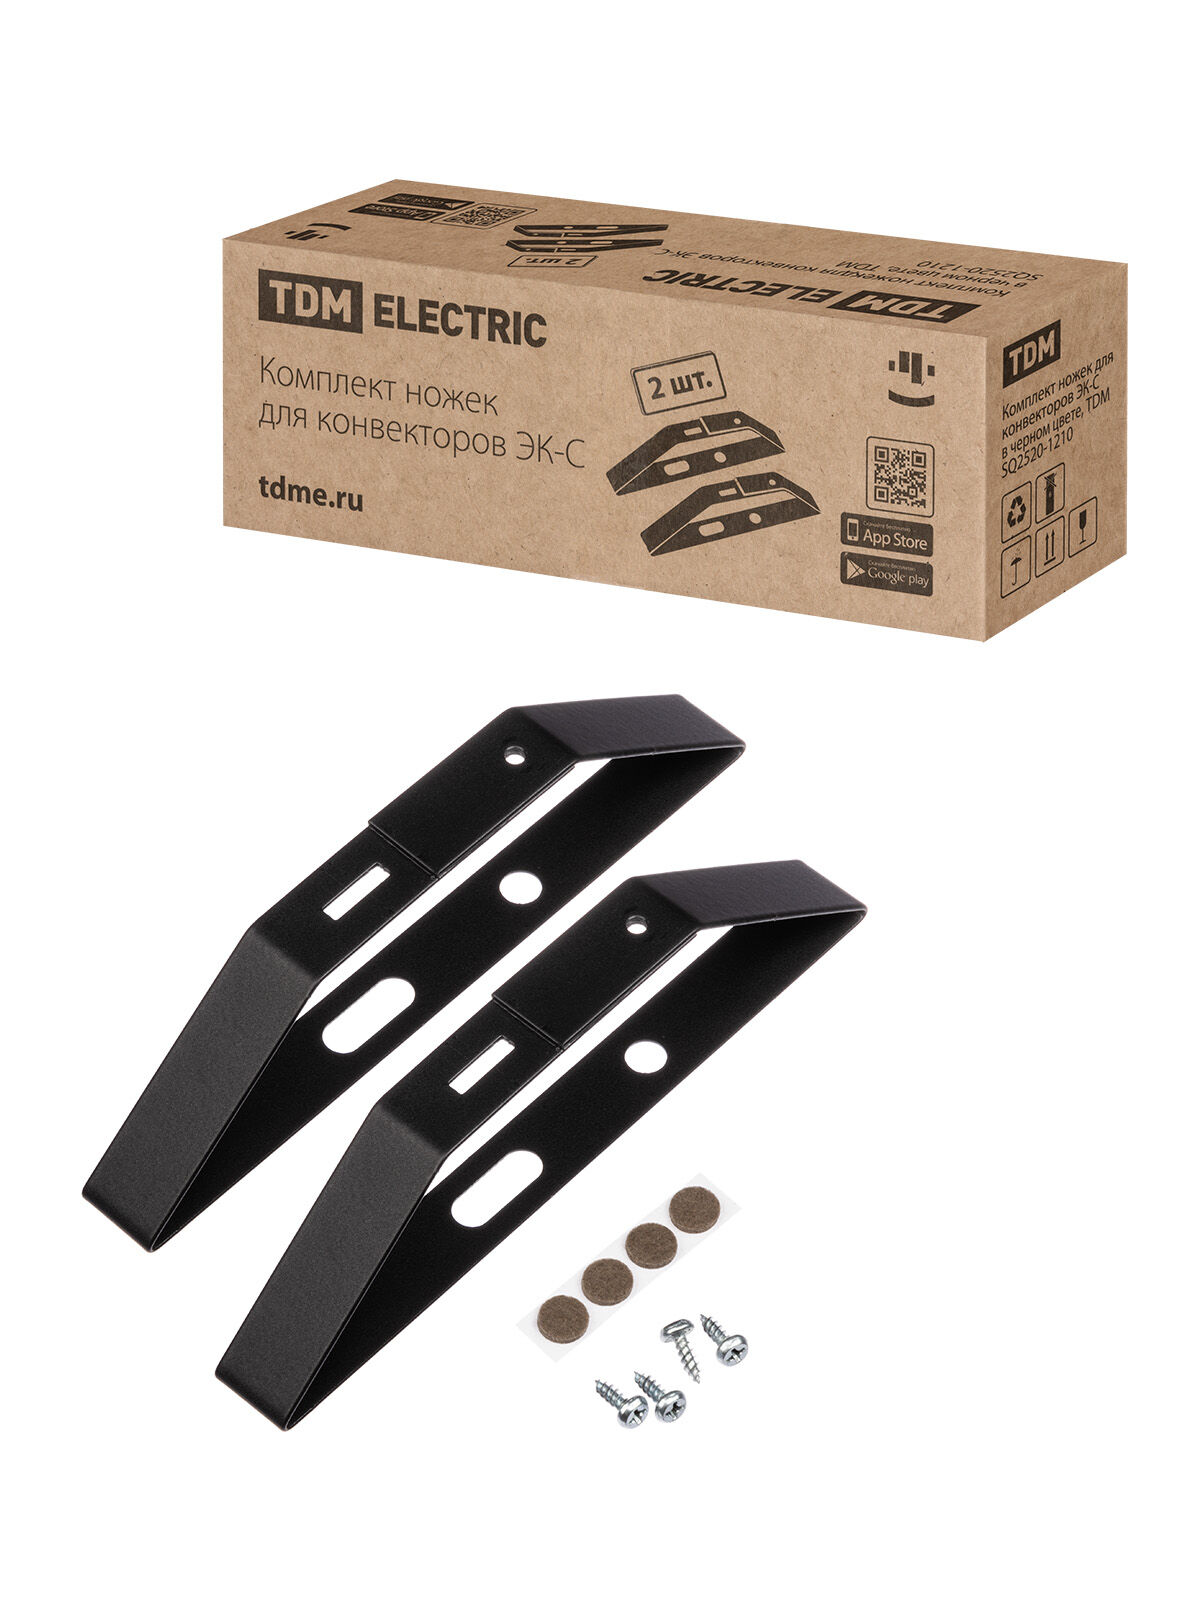 Комплект ножек для конвекторов ЭК-С в черном цвете TDM (60)